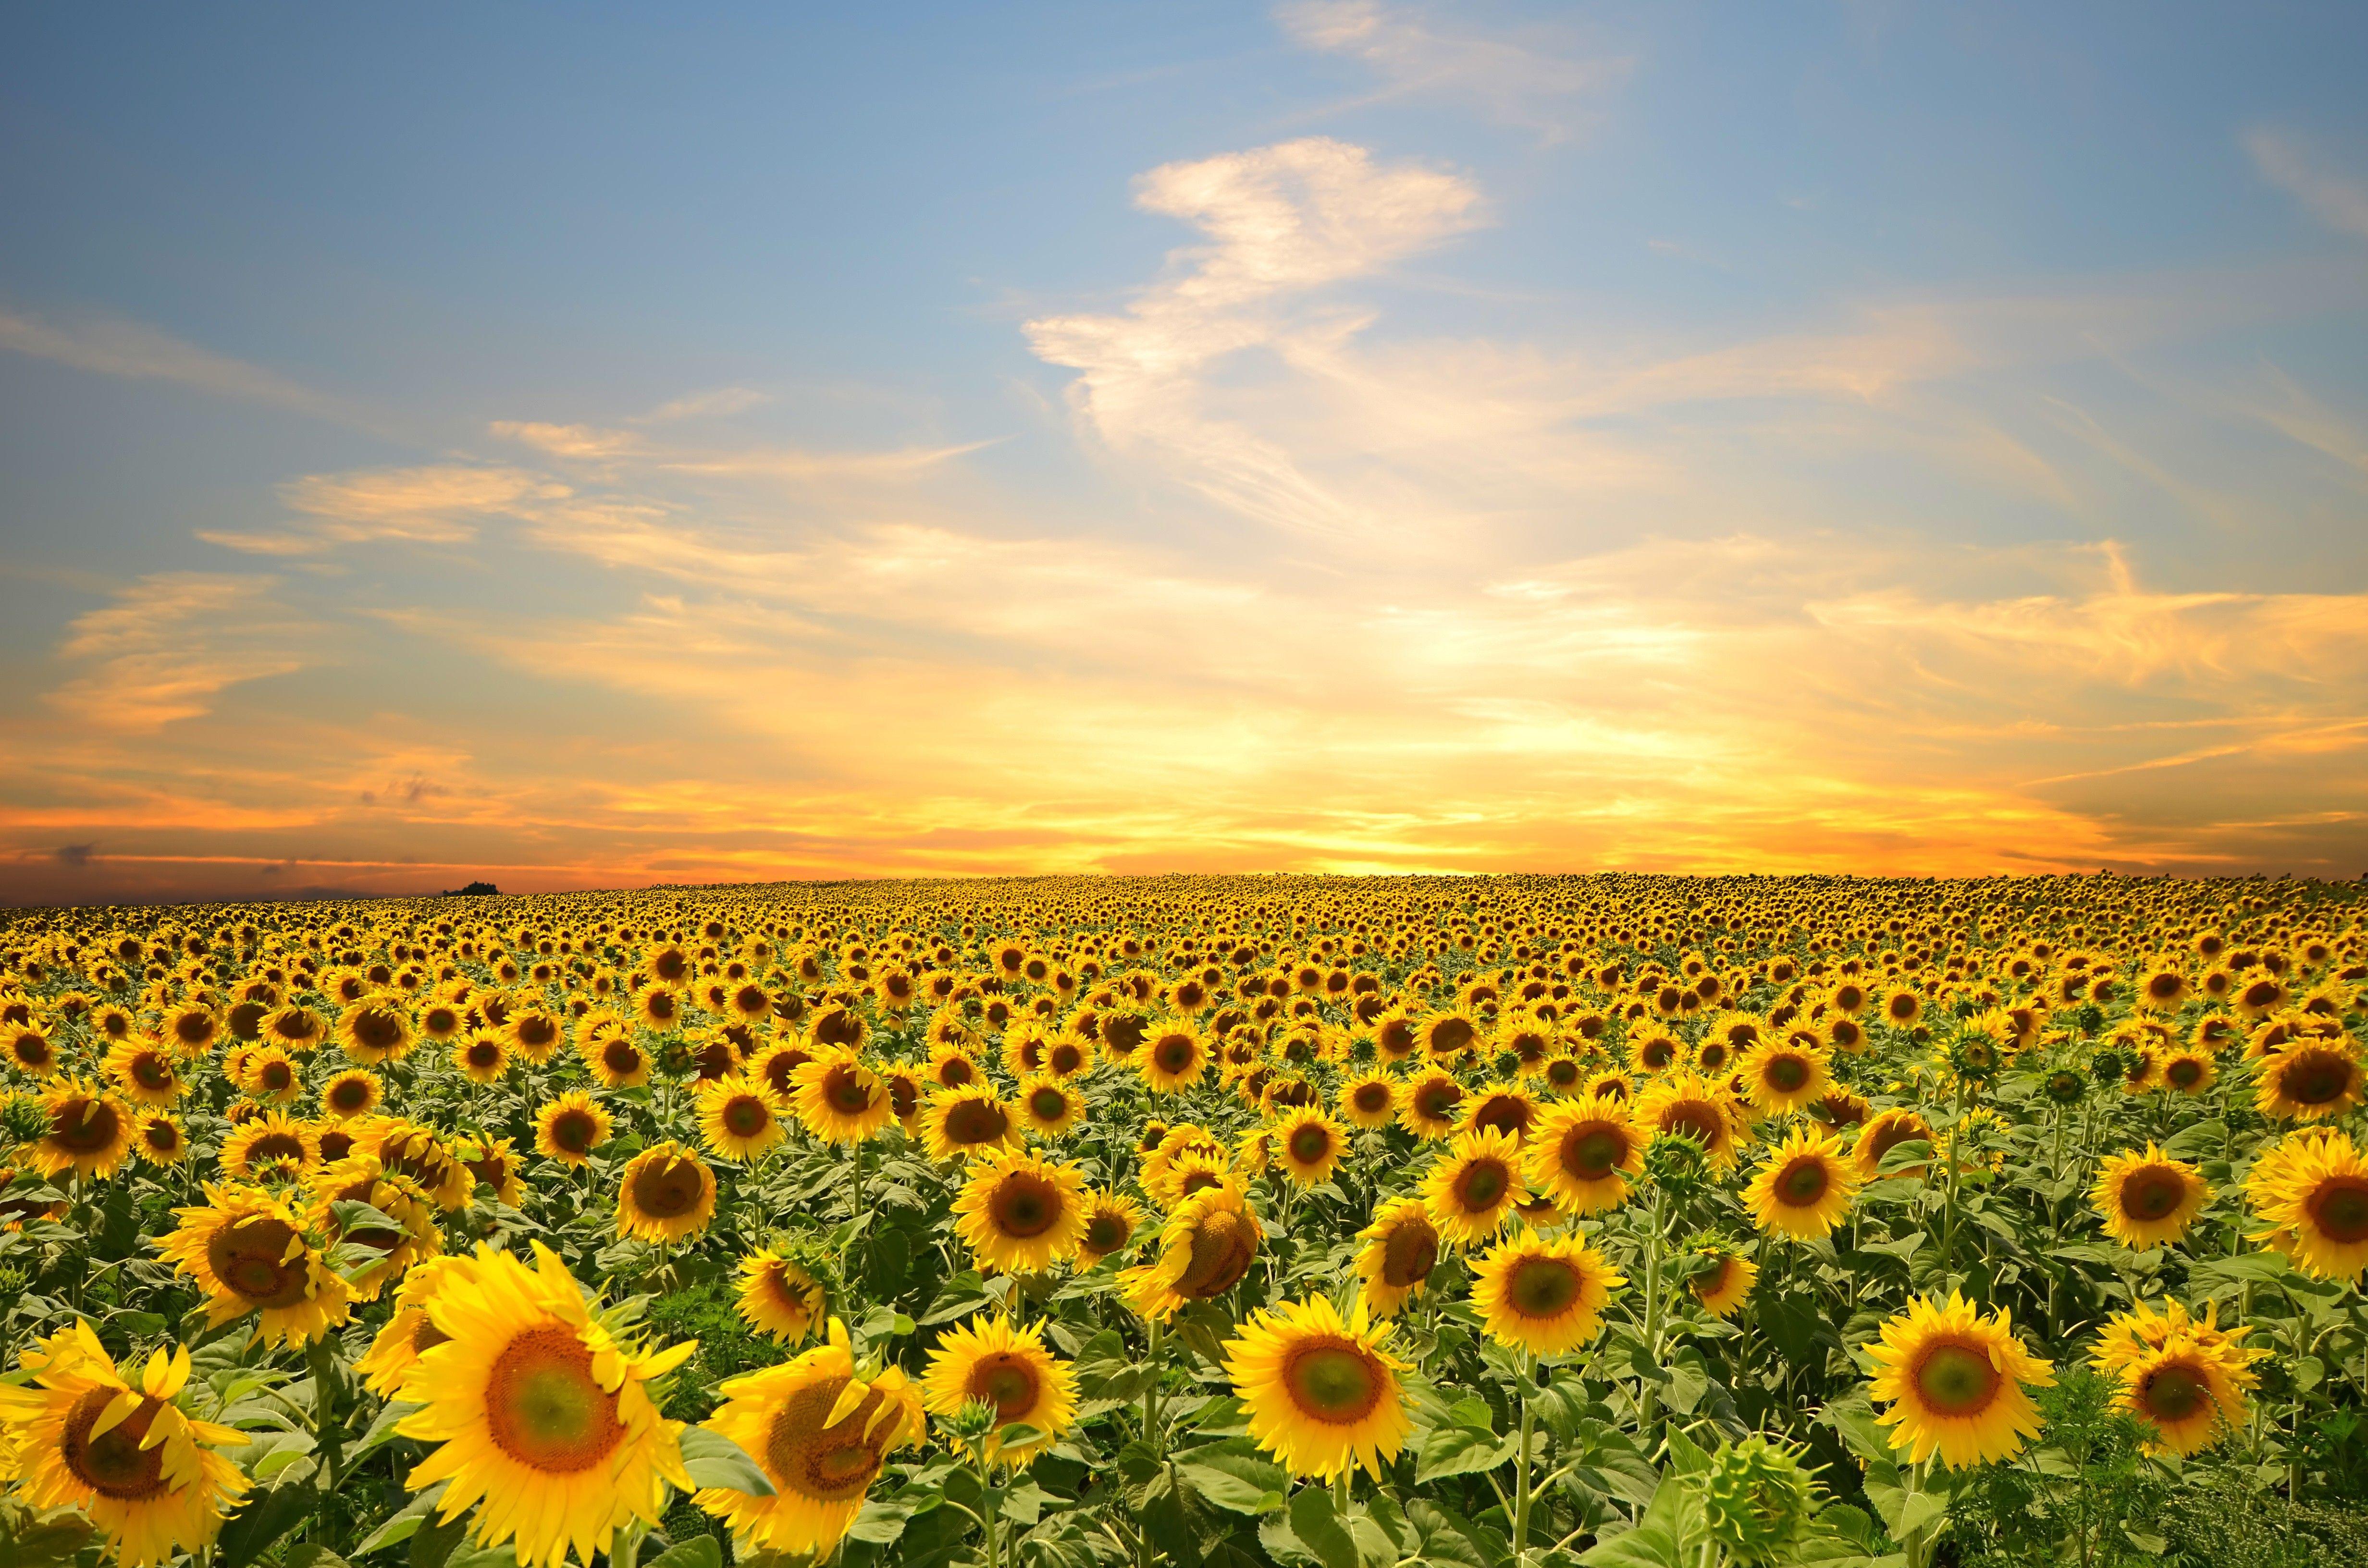 Sunflower Desktop Wallpapers - Top Free Sunflower Desktop ...